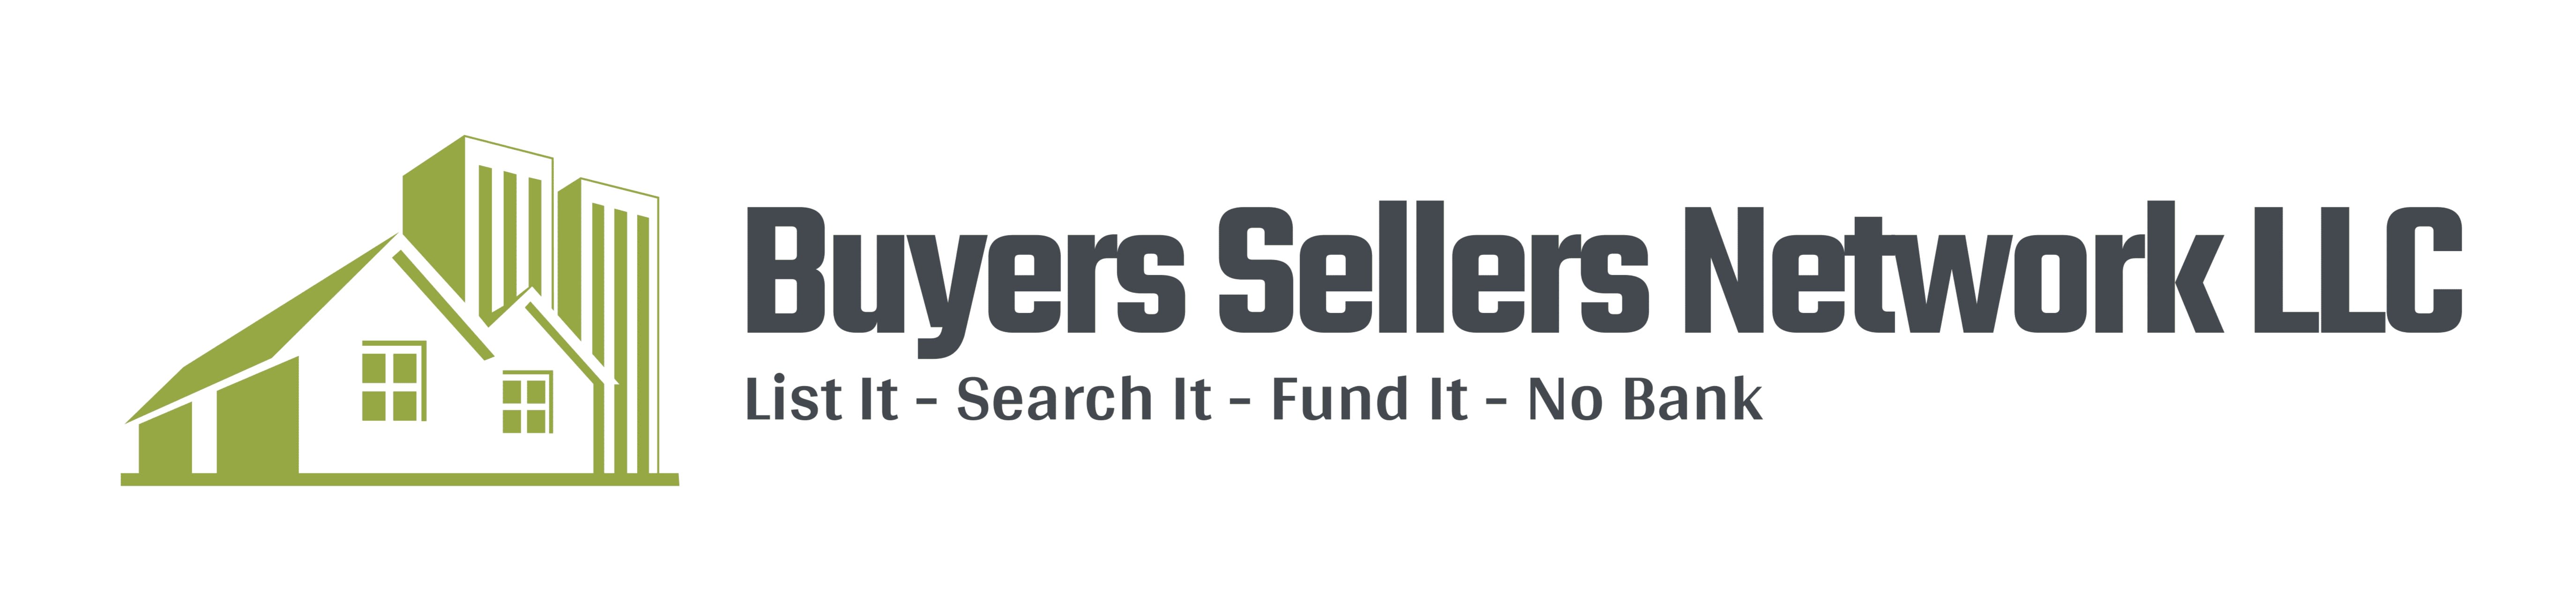 Buyers Sellers Network